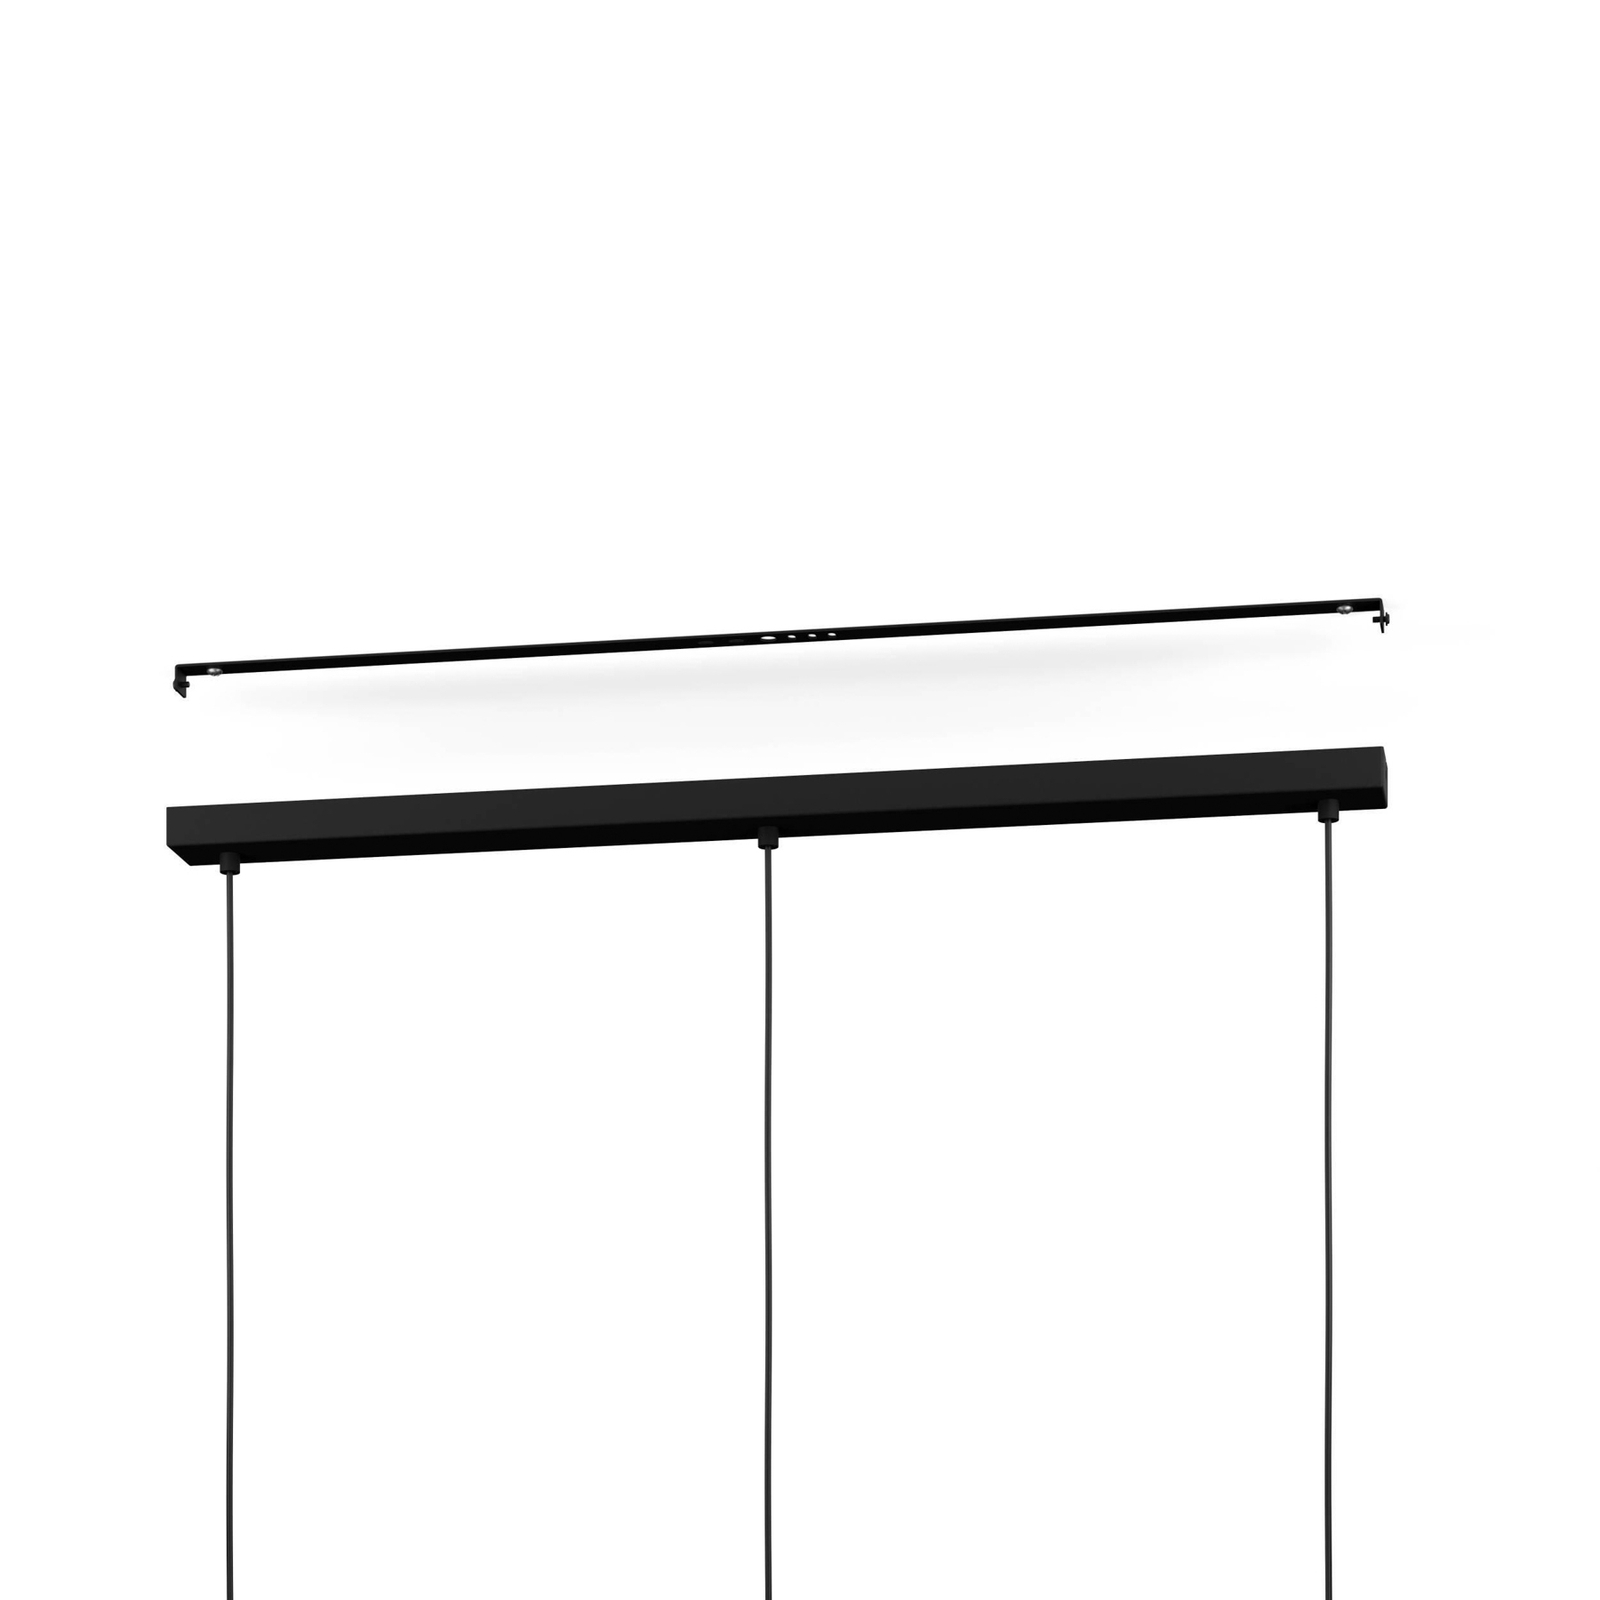 Matlock hänglampa, längd 90 cm, grå/svart, 3 lampor.